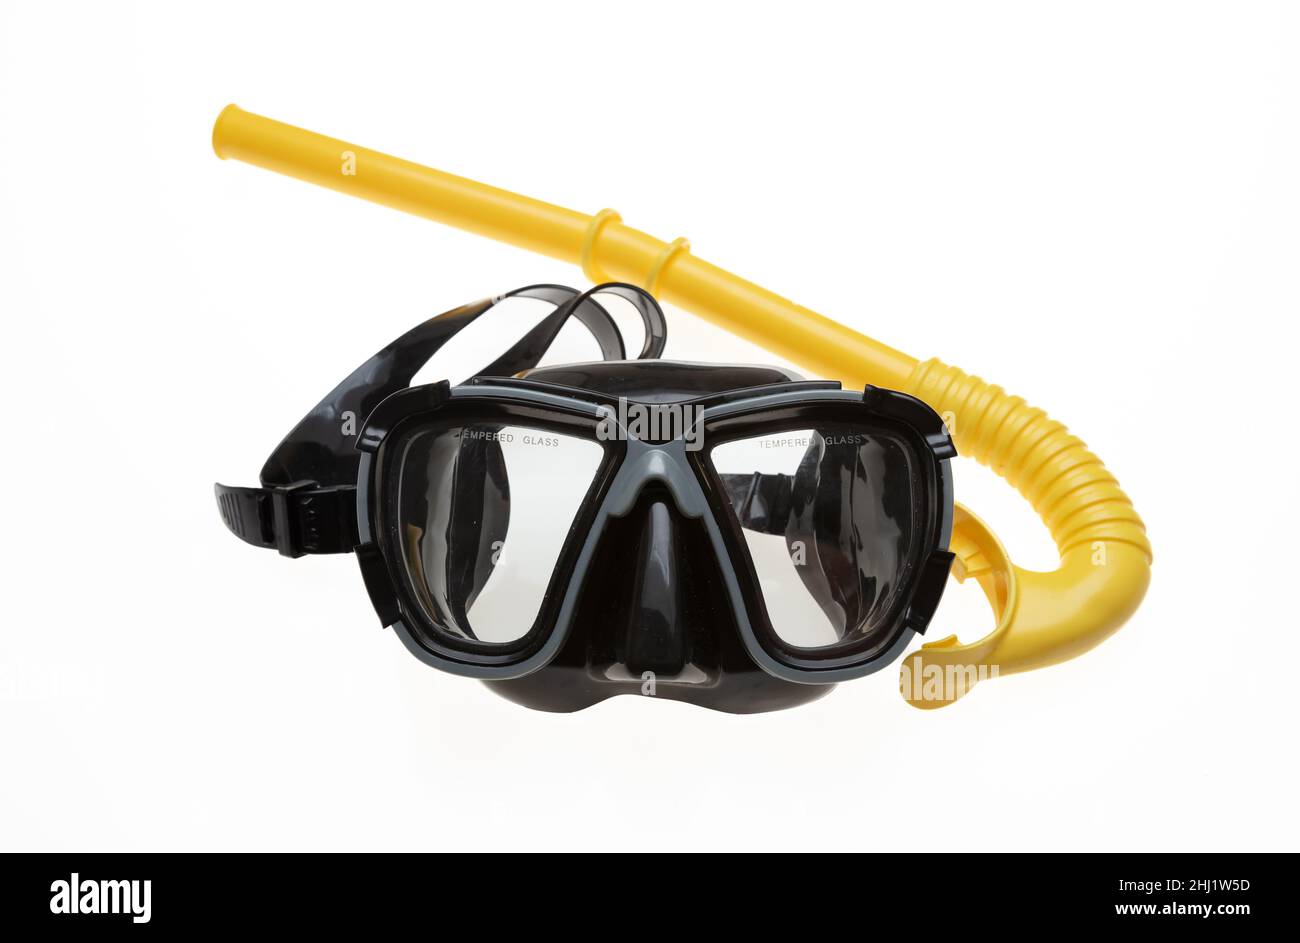 Tauchmaske und gelber Schnorchel isoliert Ausschnitt auf weißem Hintergrund. Schwarze Tauchermaske mit gehärtetem Glas Schwimmen und Tauchen Seeausrüstung. Sport, Aktivität, Stockfoto